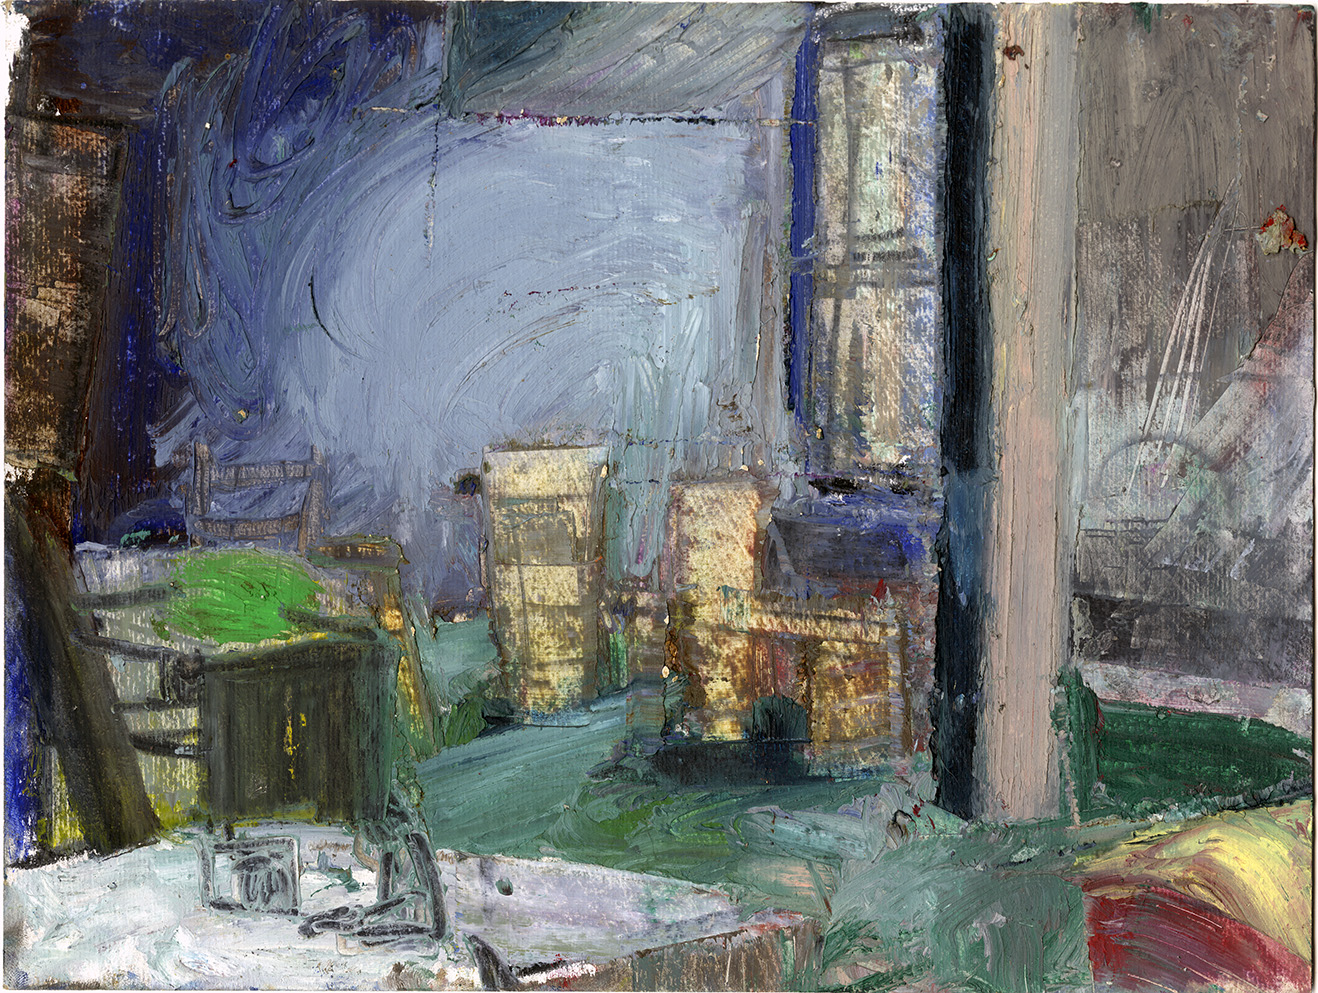   Interior No. 07 (1997)  